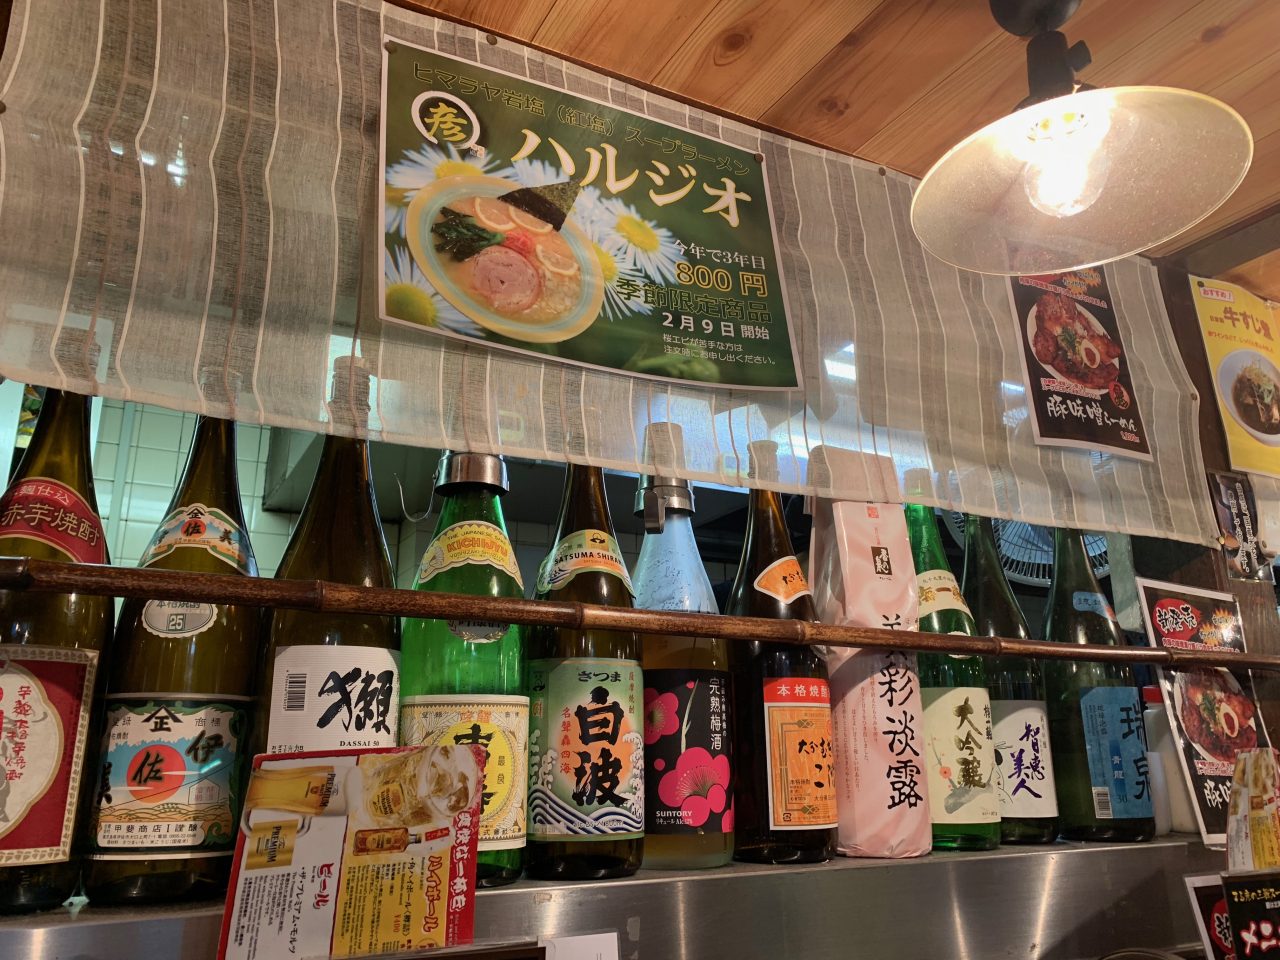 東京食品六本木店のカウンター席の写真。さまざまな種類の日本酒が並んでおり、壁には「ハルジオ」のポップが貼り付けられている。